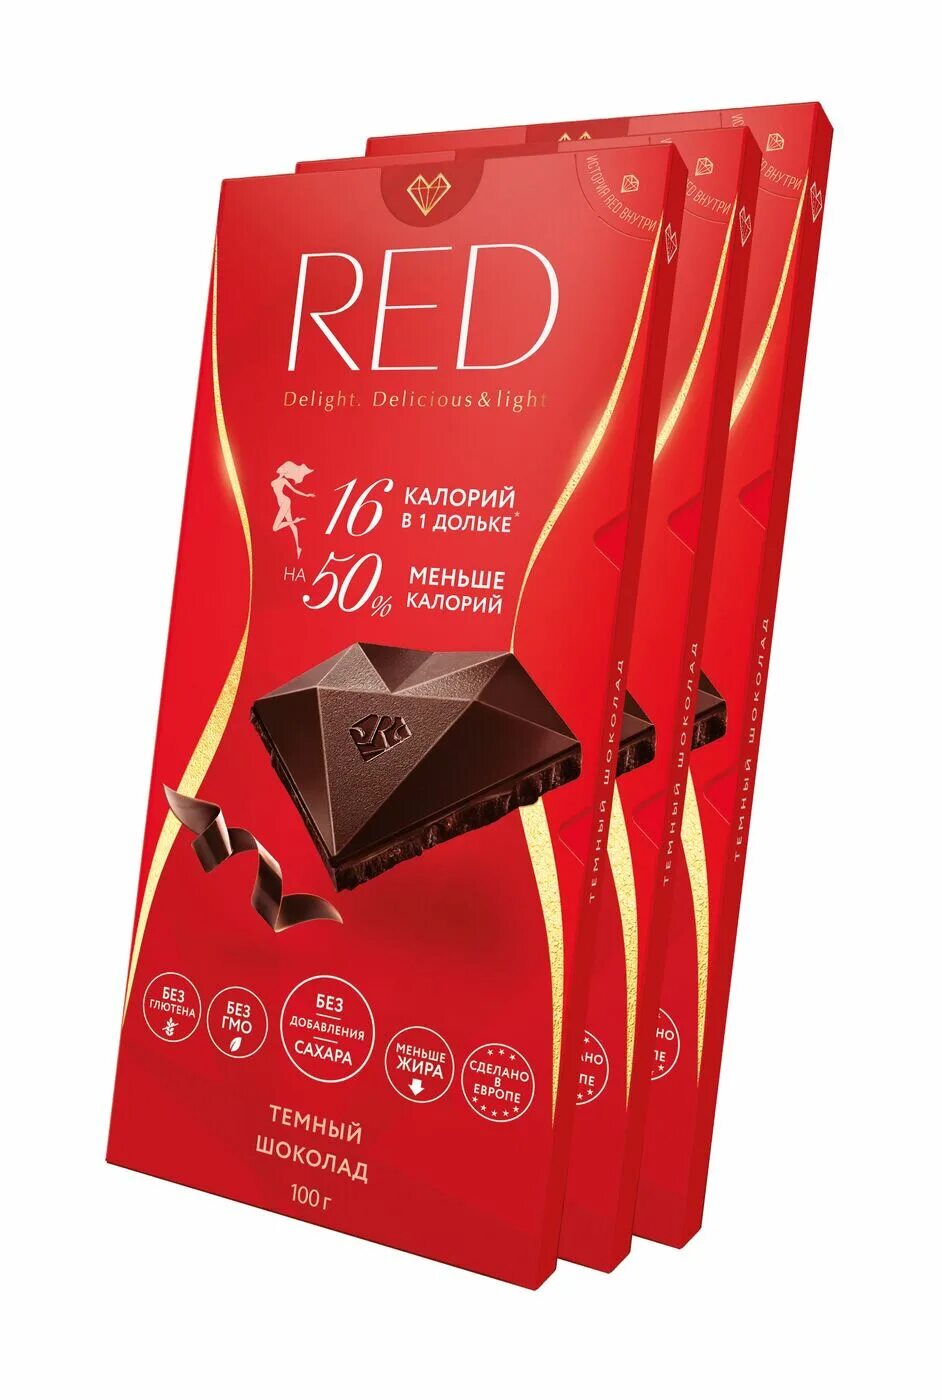 Шоколад Red Экстра темный 60% 100г. Шоколад Red Delight 100г темный 50%. Шоколад Red Delight темный классический 40%. Шоколад Red темный классический 100г. Шоколад ред купить